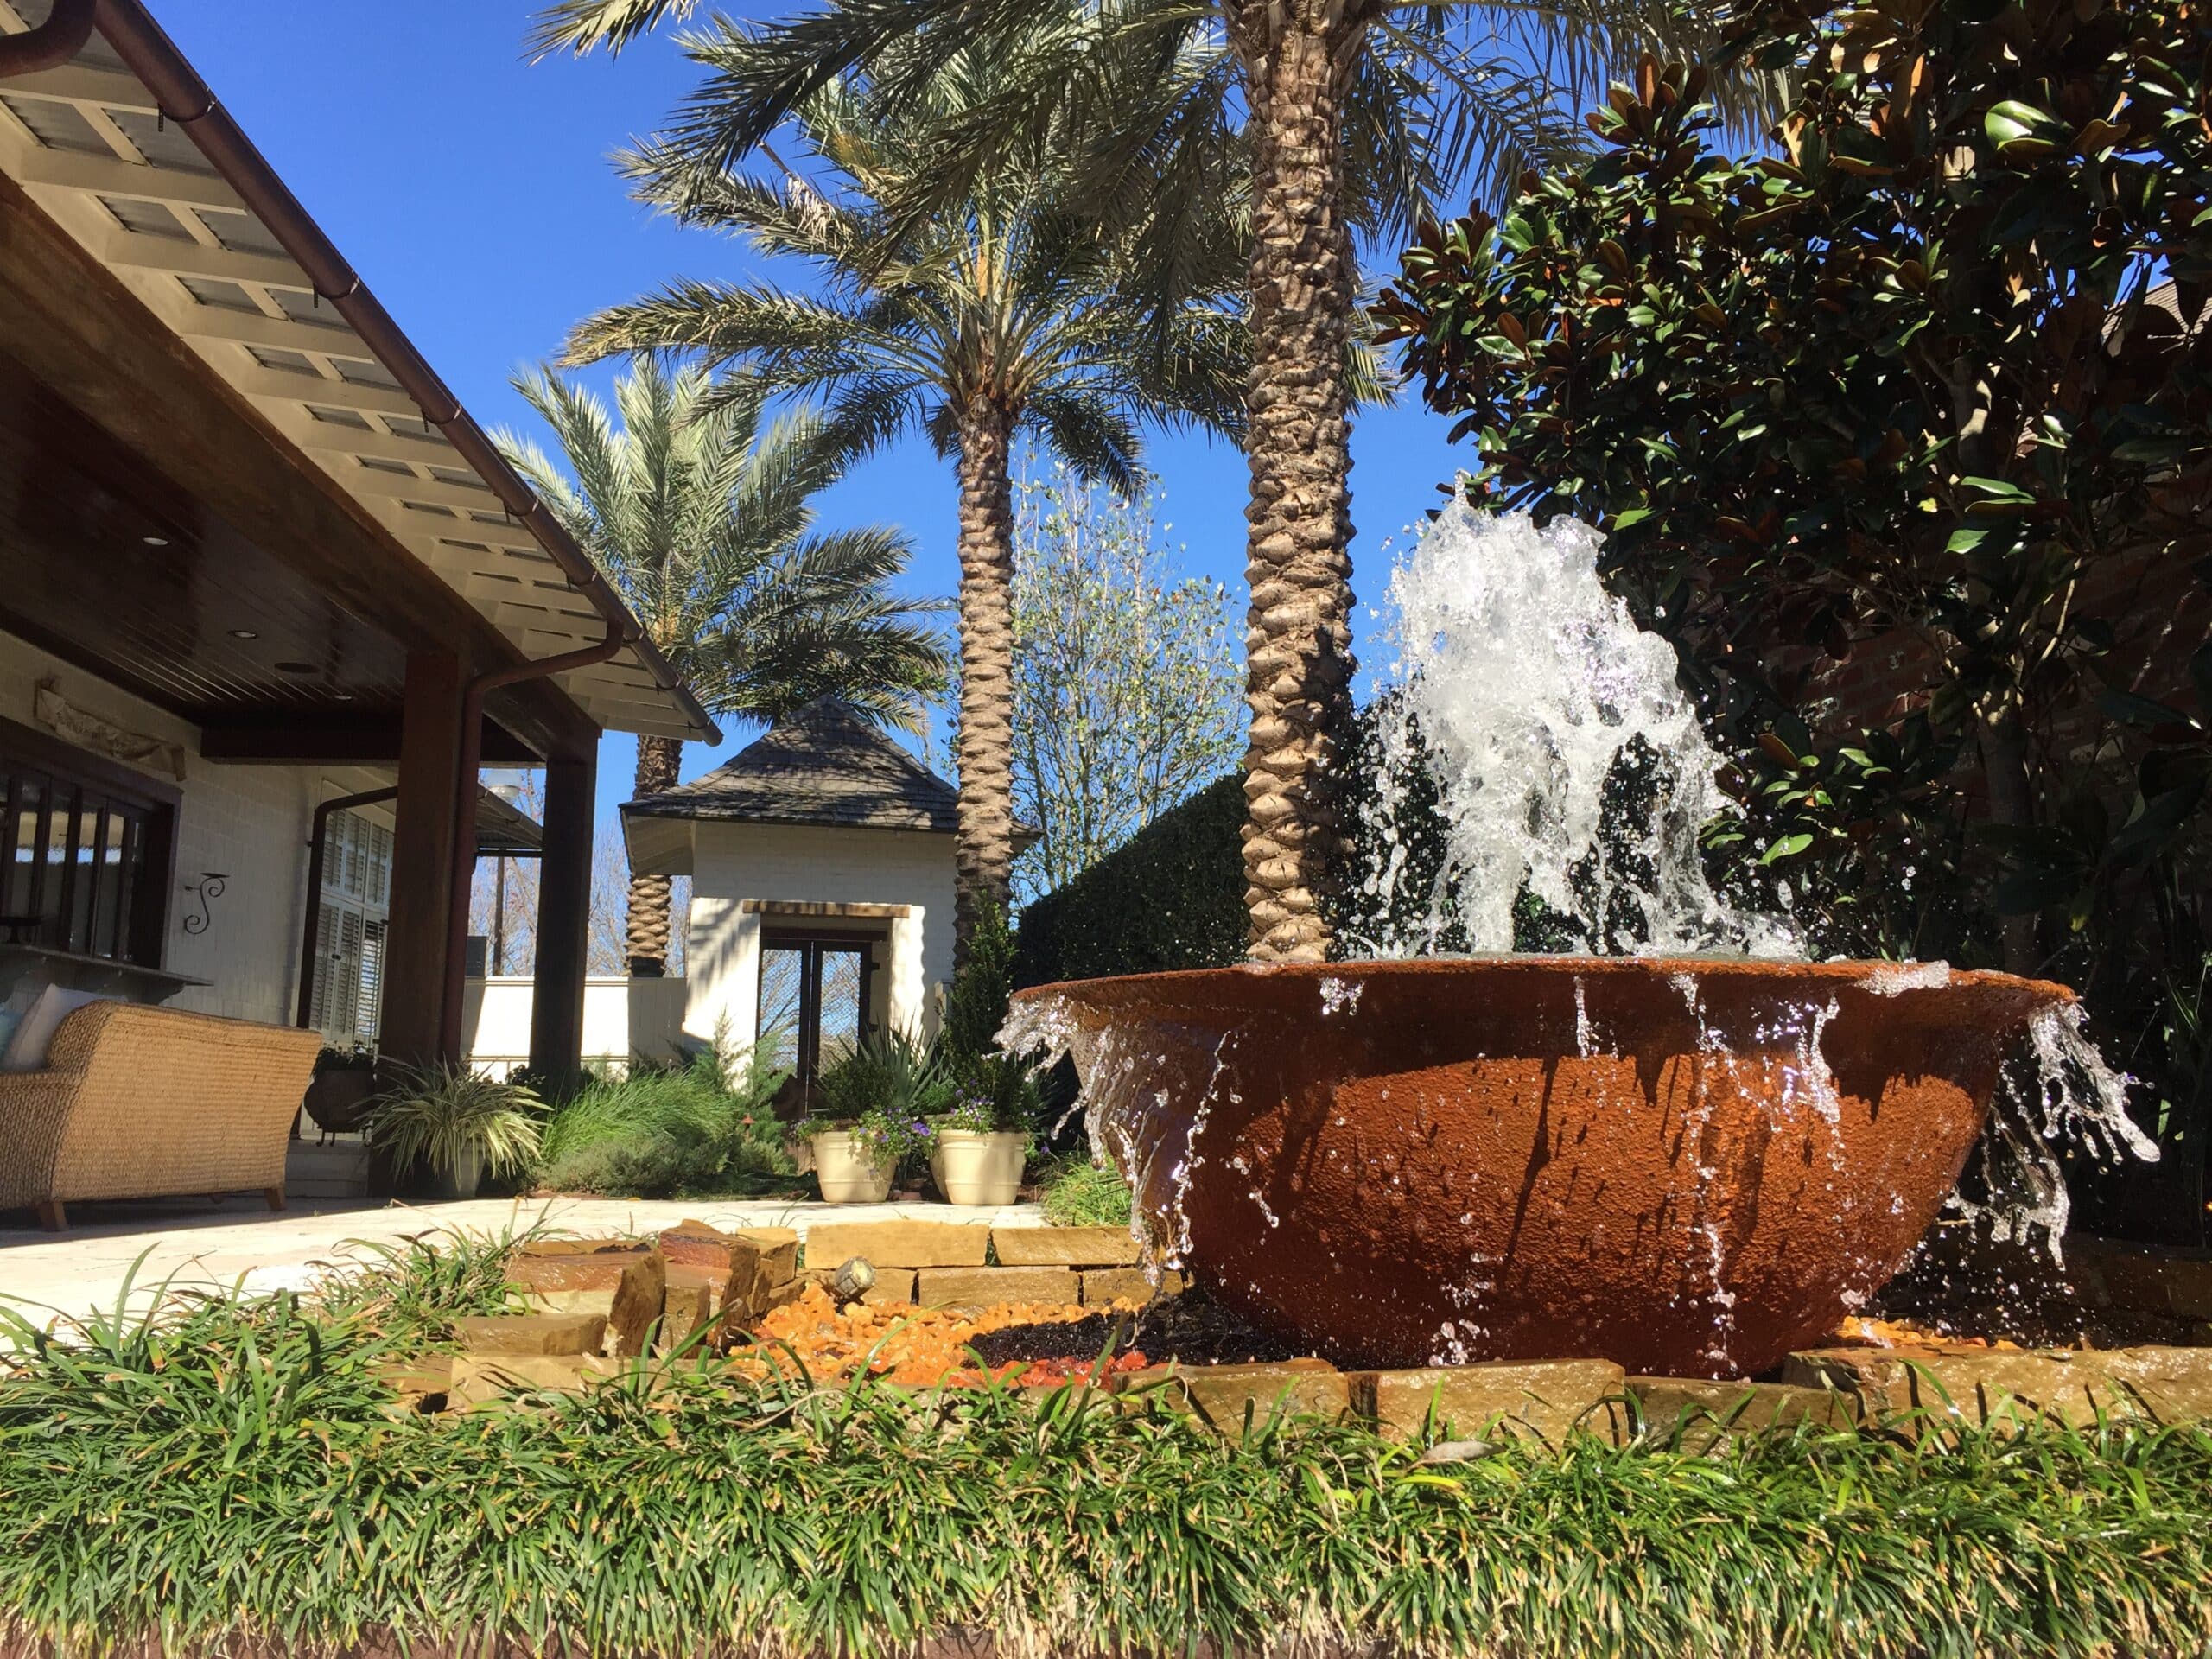 fountain next to palm trees